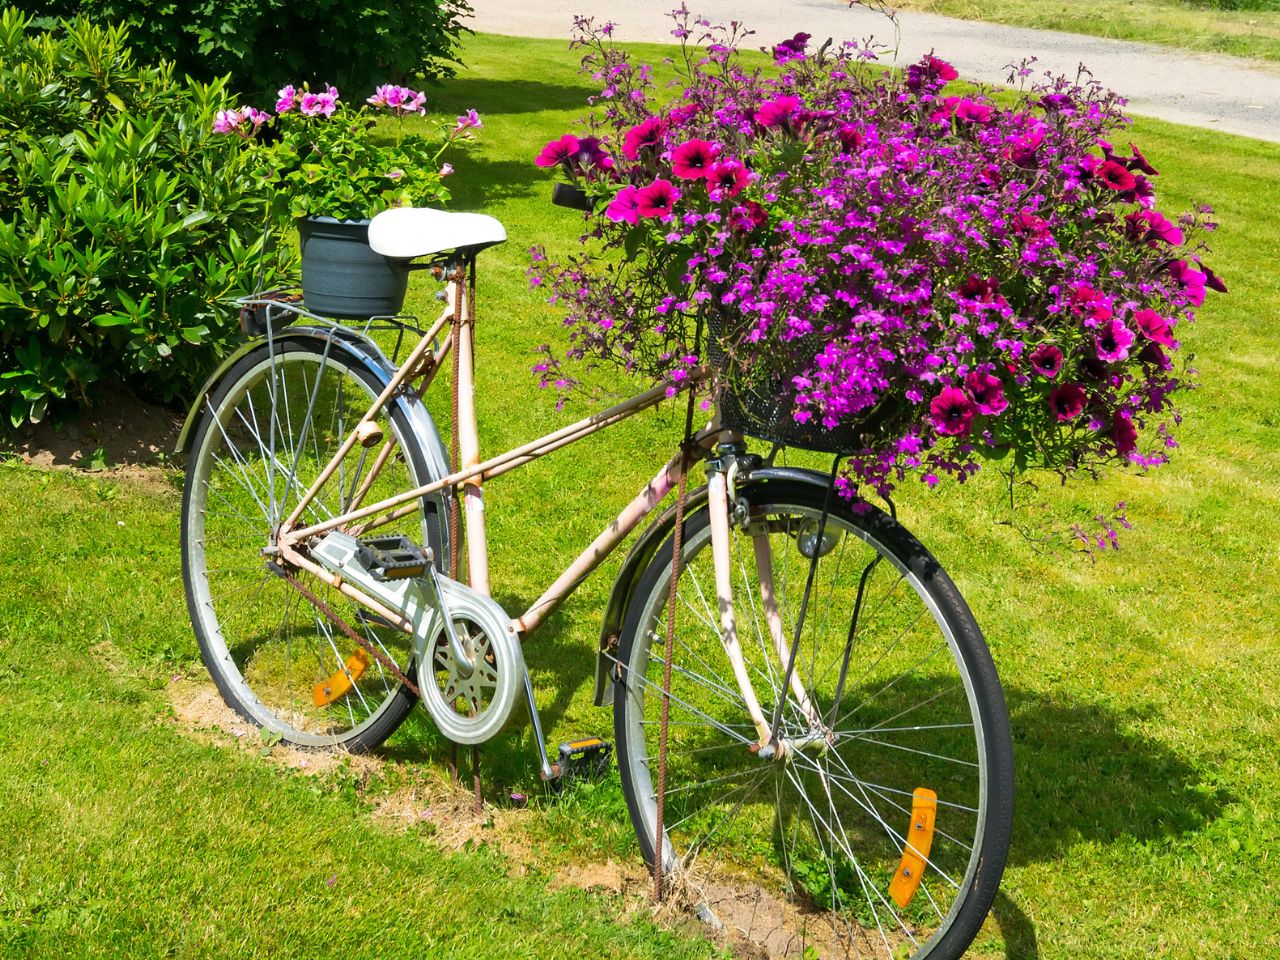 Purpurowe kwiaty na białym rowerze